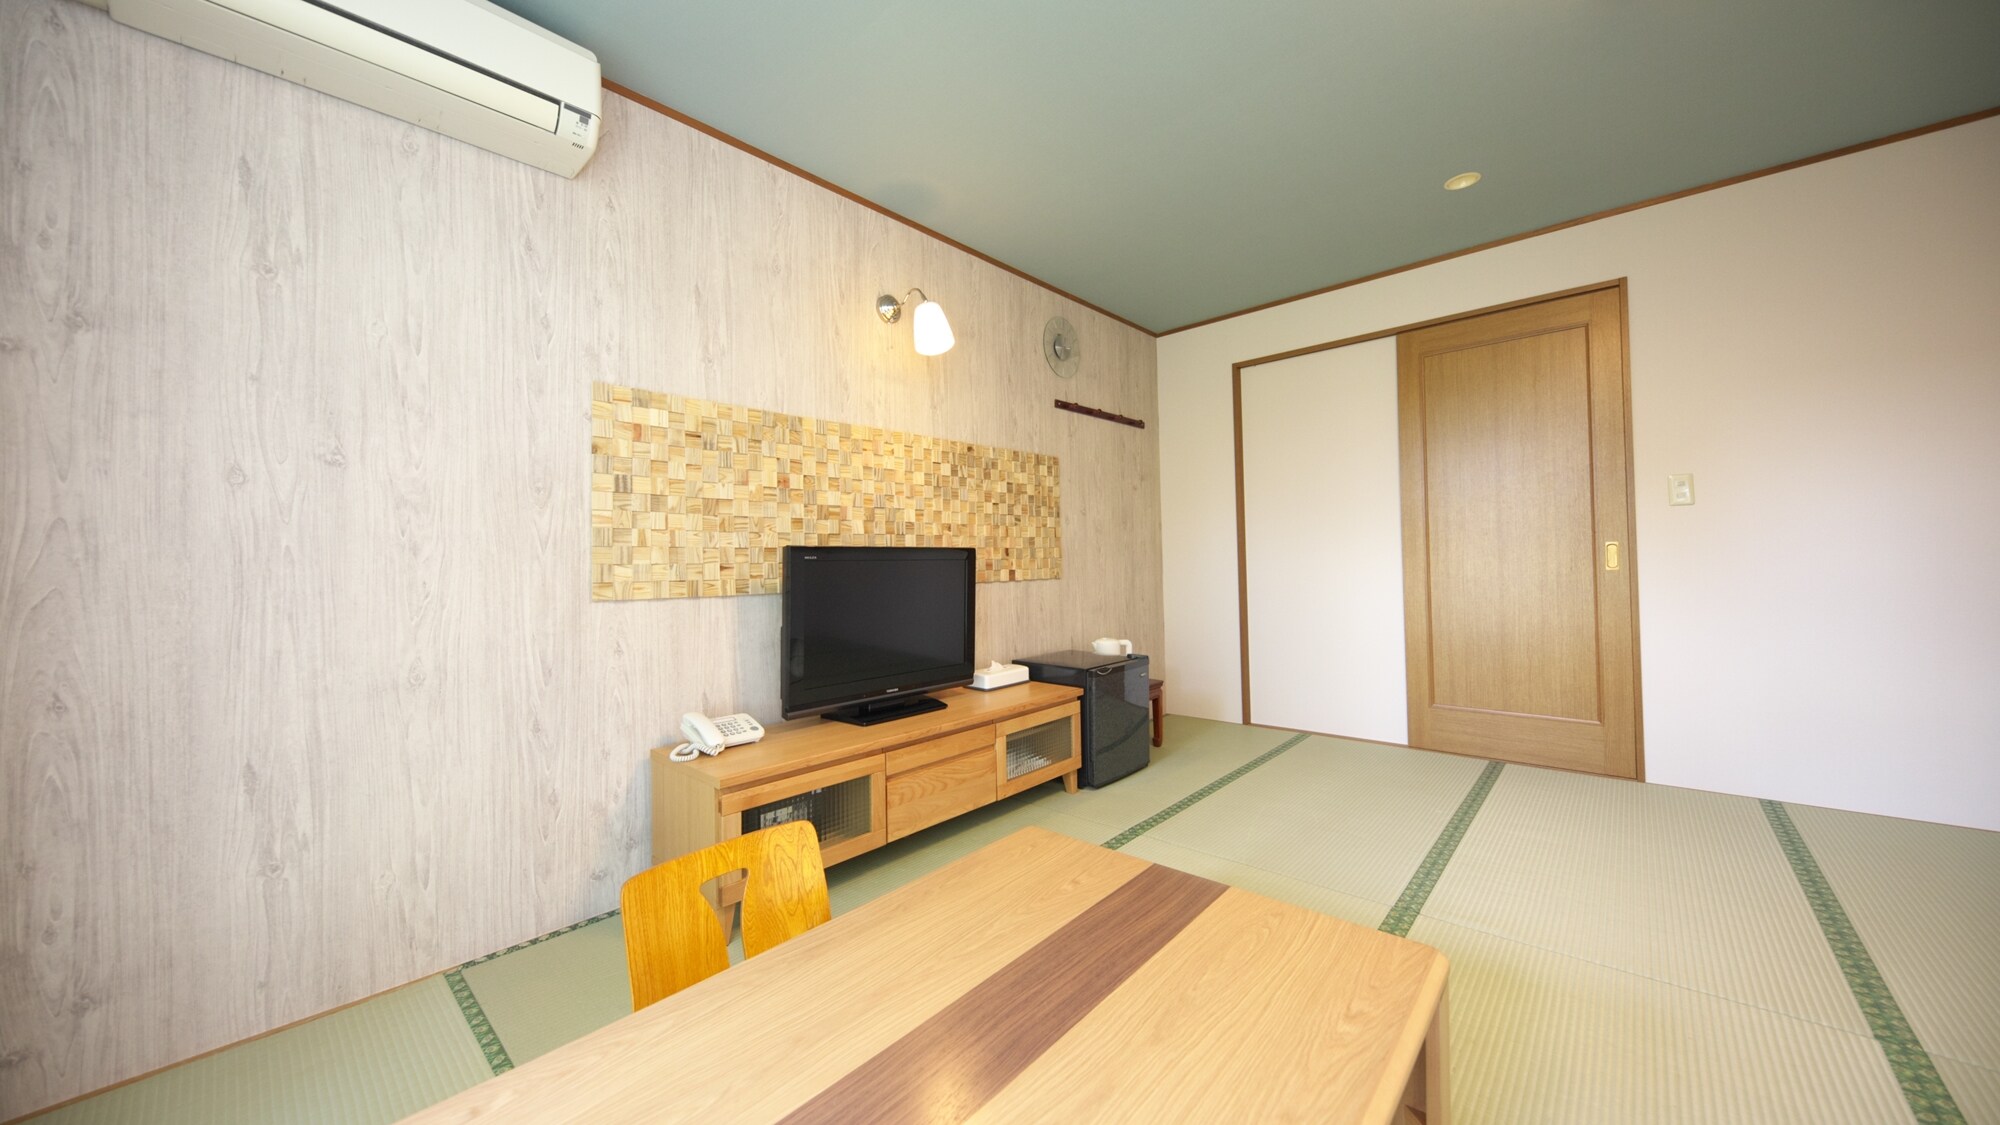 【일본식 방】8~10 다다미(조망을 신경쓰지 않는 방향) 디자인성이 높은 일본식 방. 커플에게도 추천입니다!